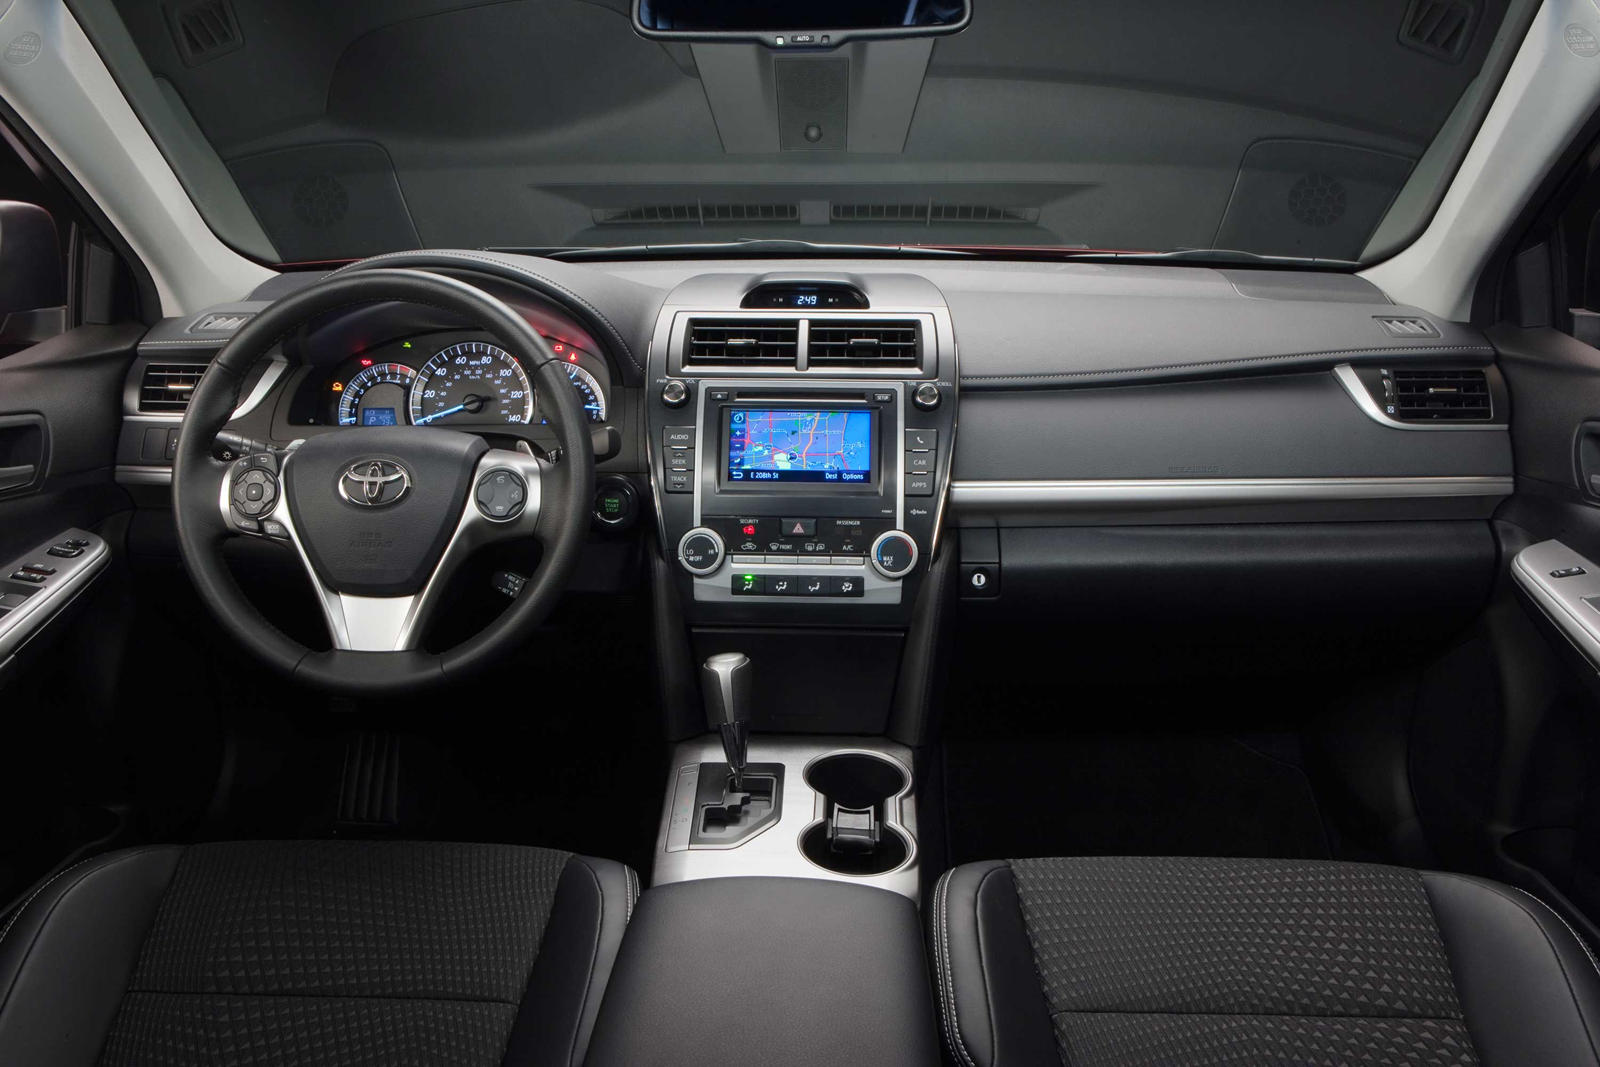 2014 Toyota Camry Interior Photos | CarBuzz